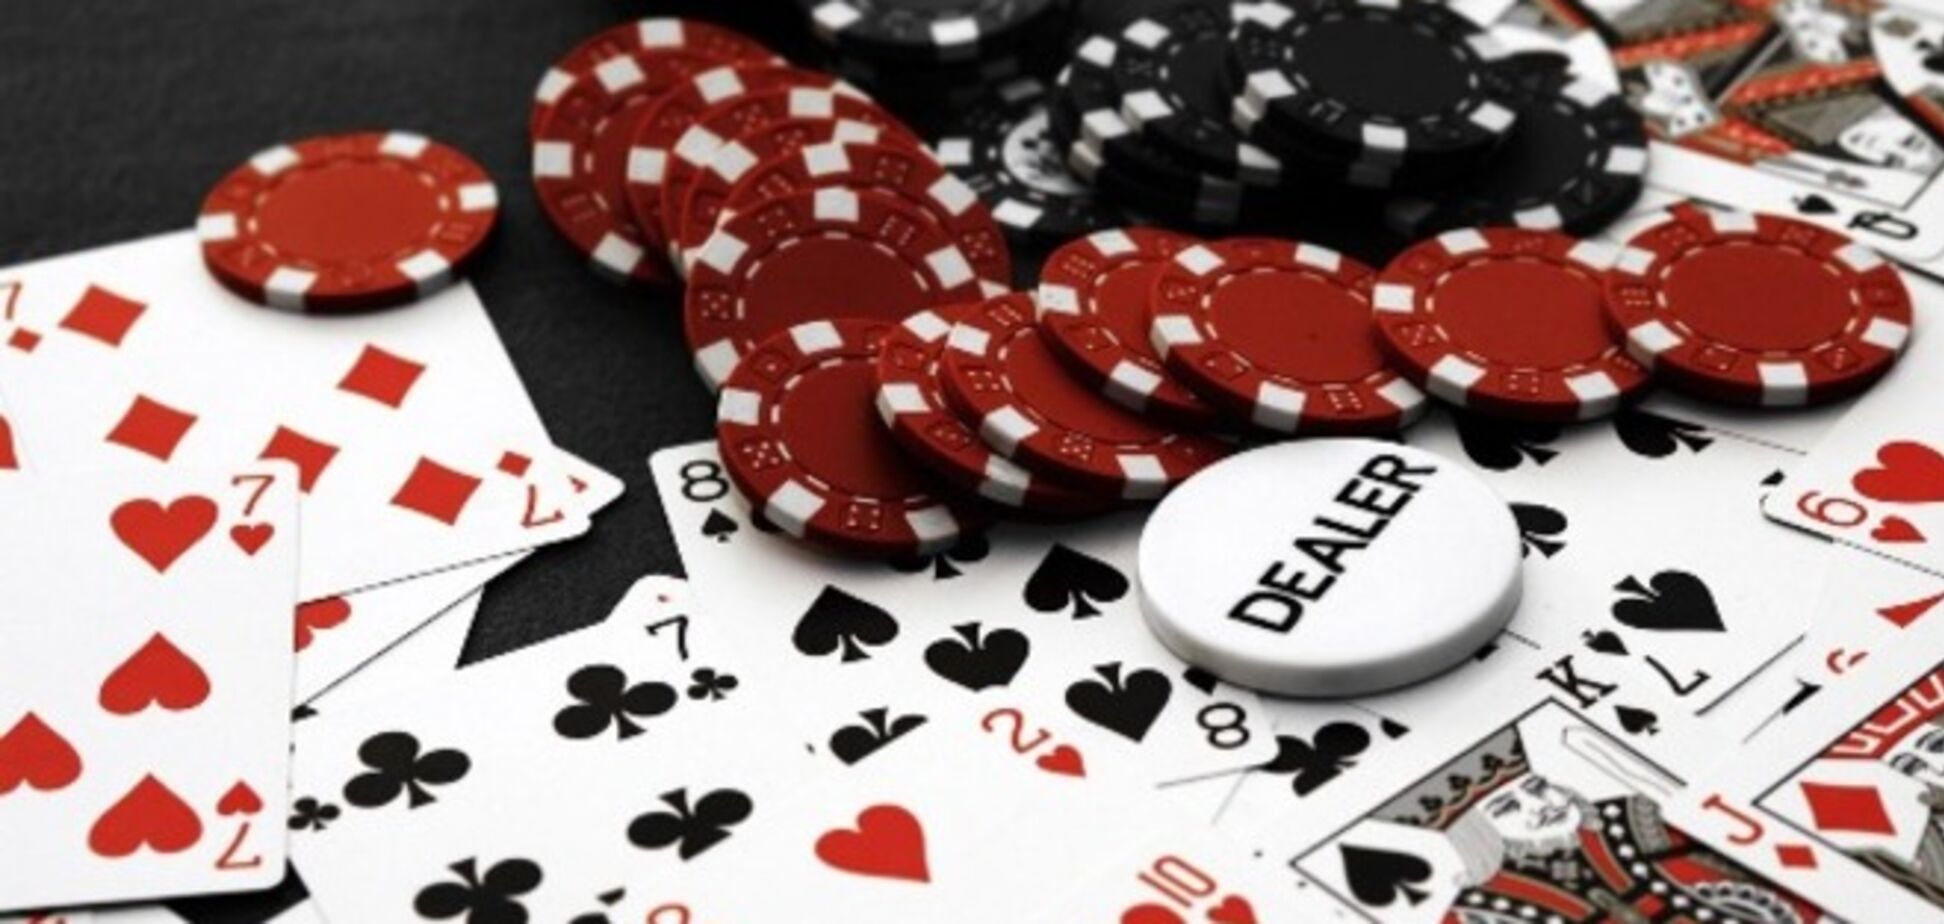 Букмекерство, казино и лотереи планируют разделить законодательно